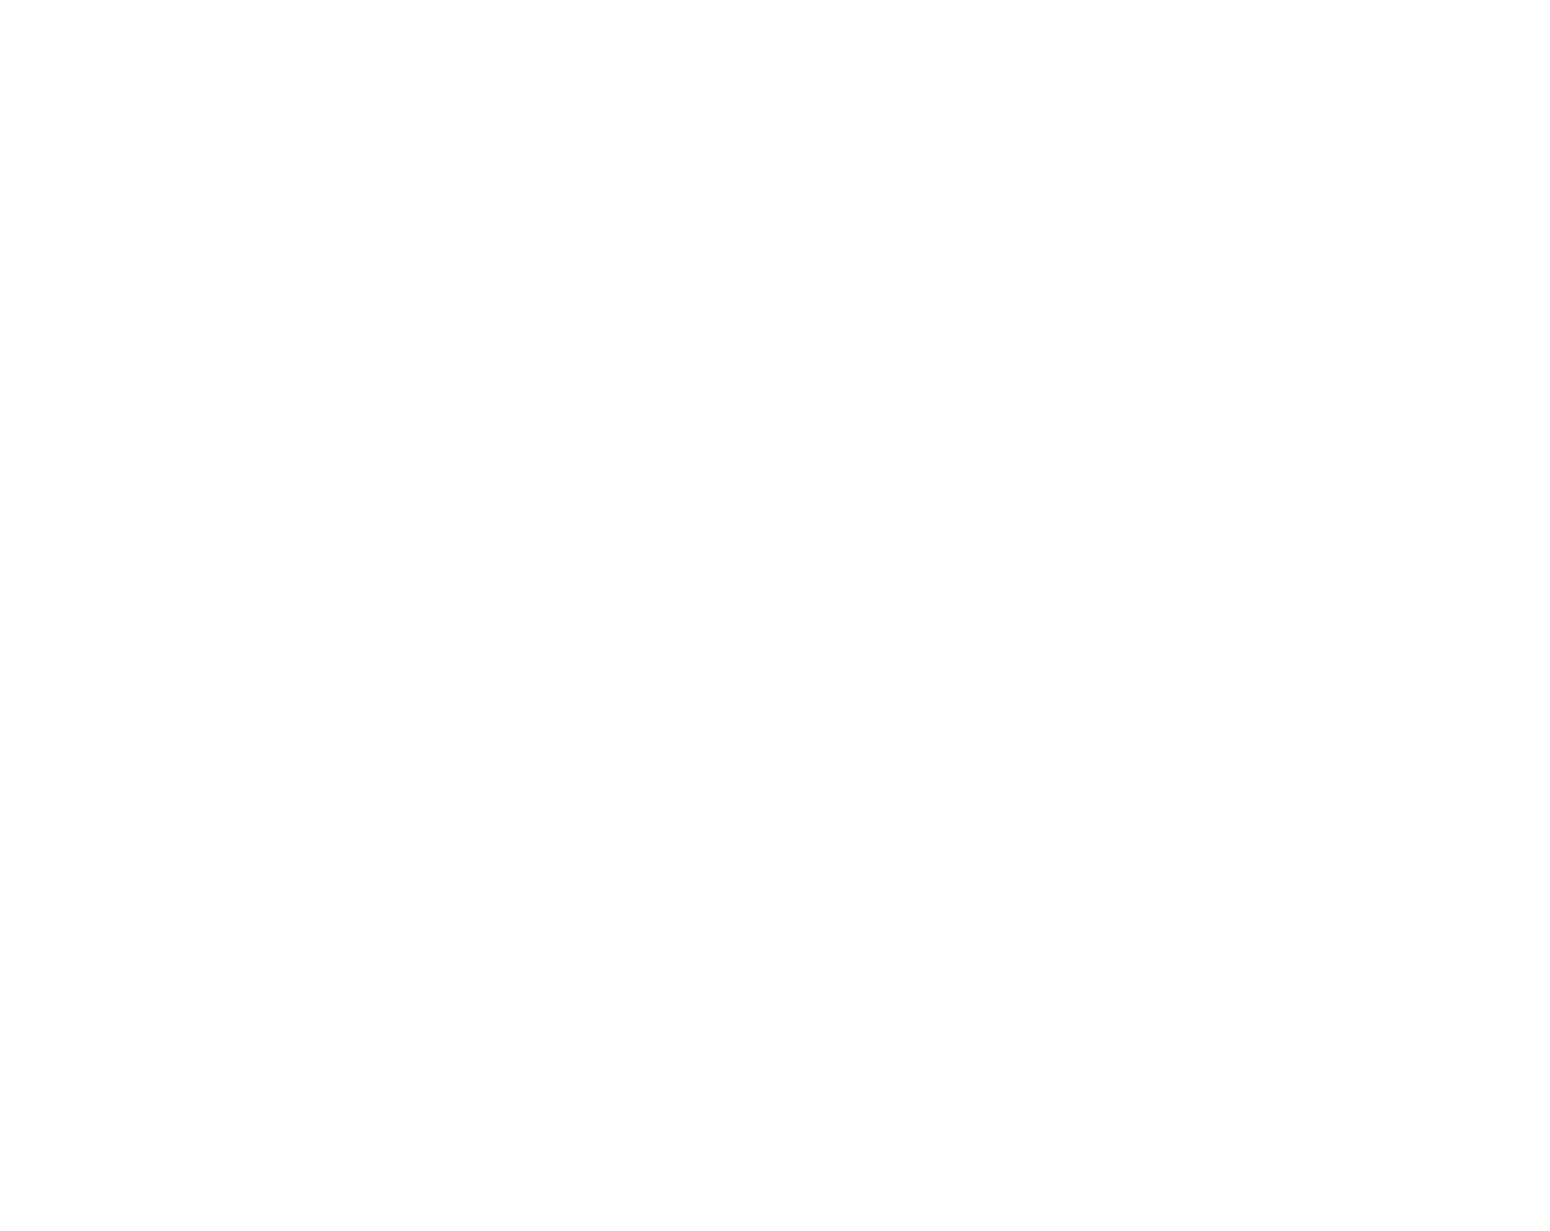 G8 Education logo large for dark backgrounds (transparent PNG)